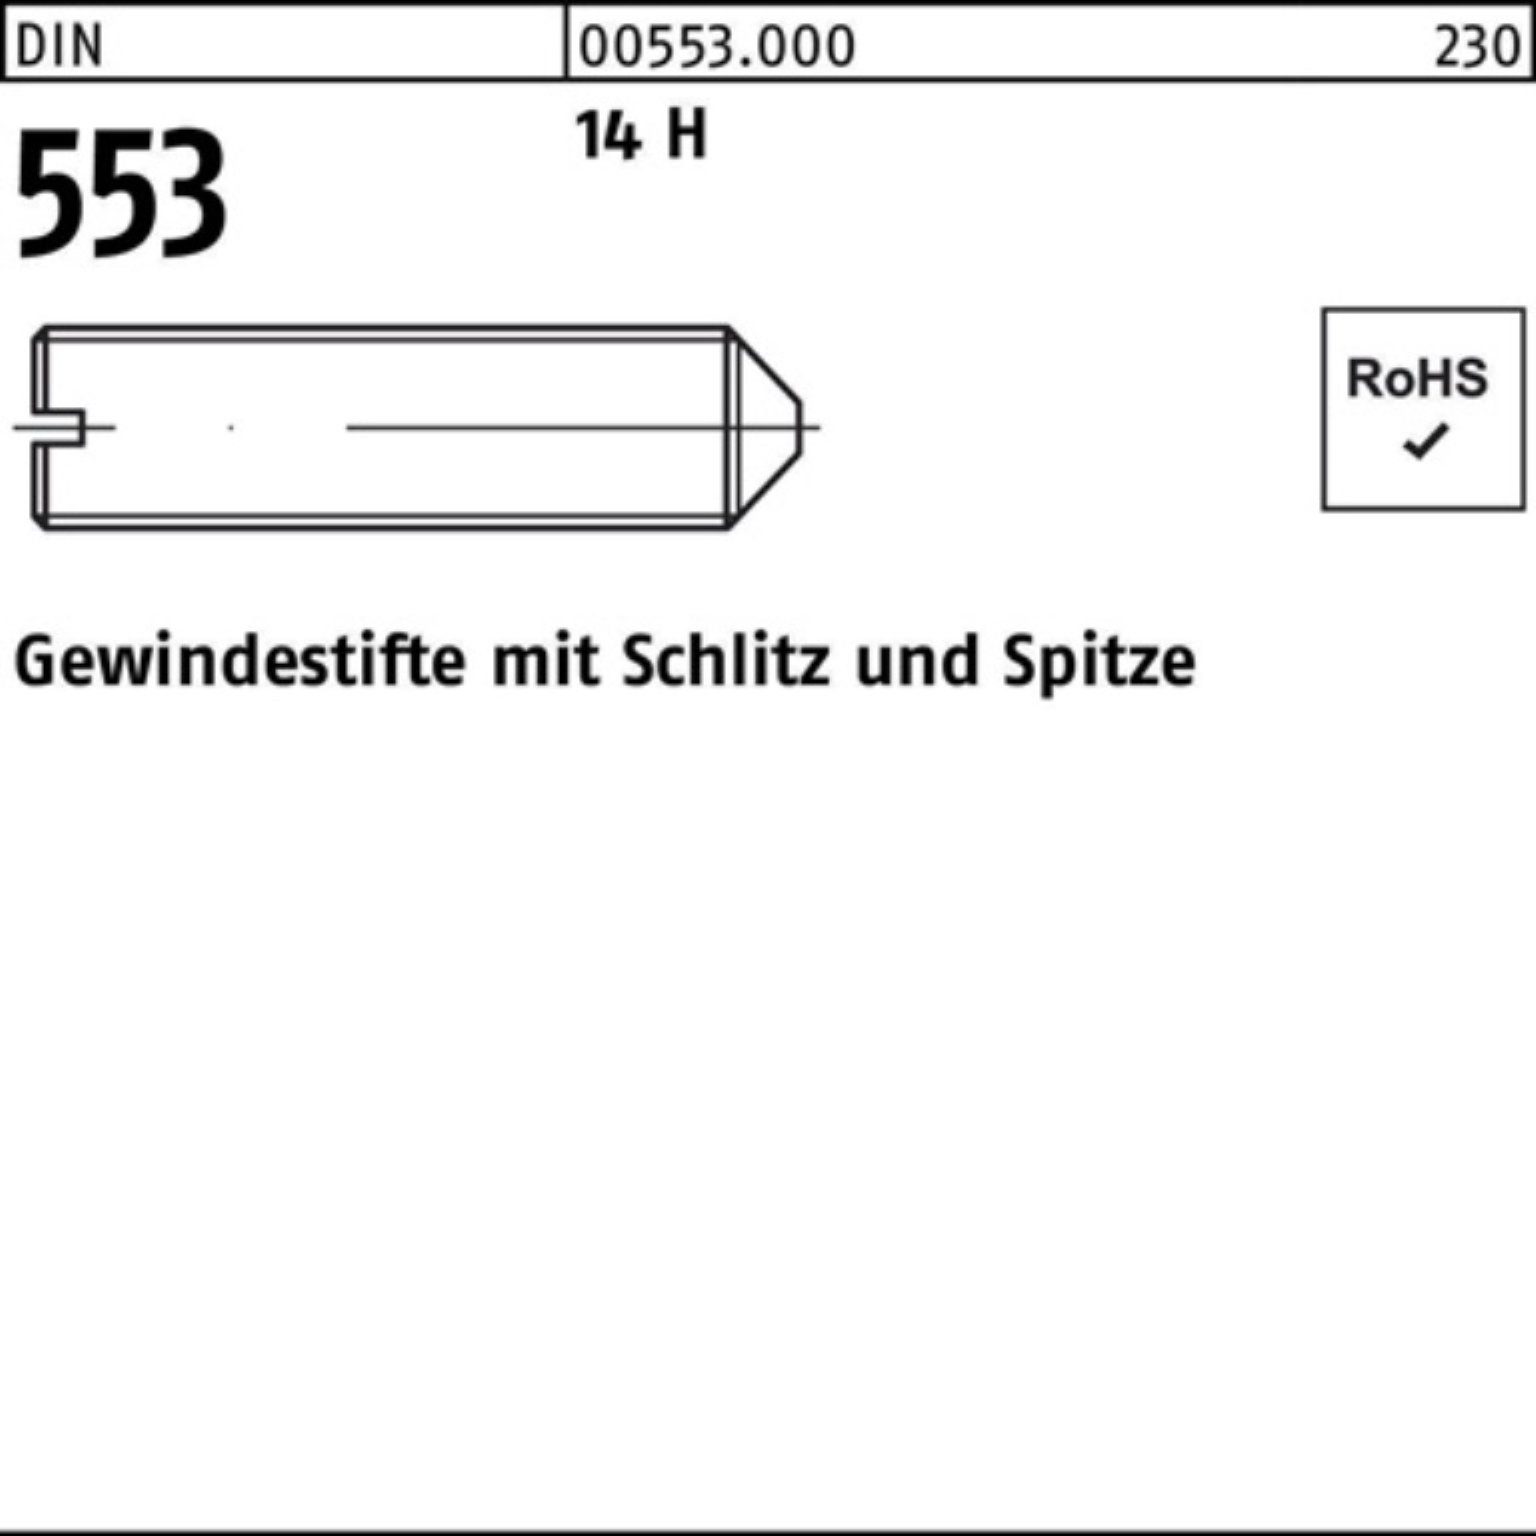 Reyher Gewindebolzen 1000er Pack Gewindestift DIN 553 Schlitz/Spitze M6x 12 14 H 1000 Stüc